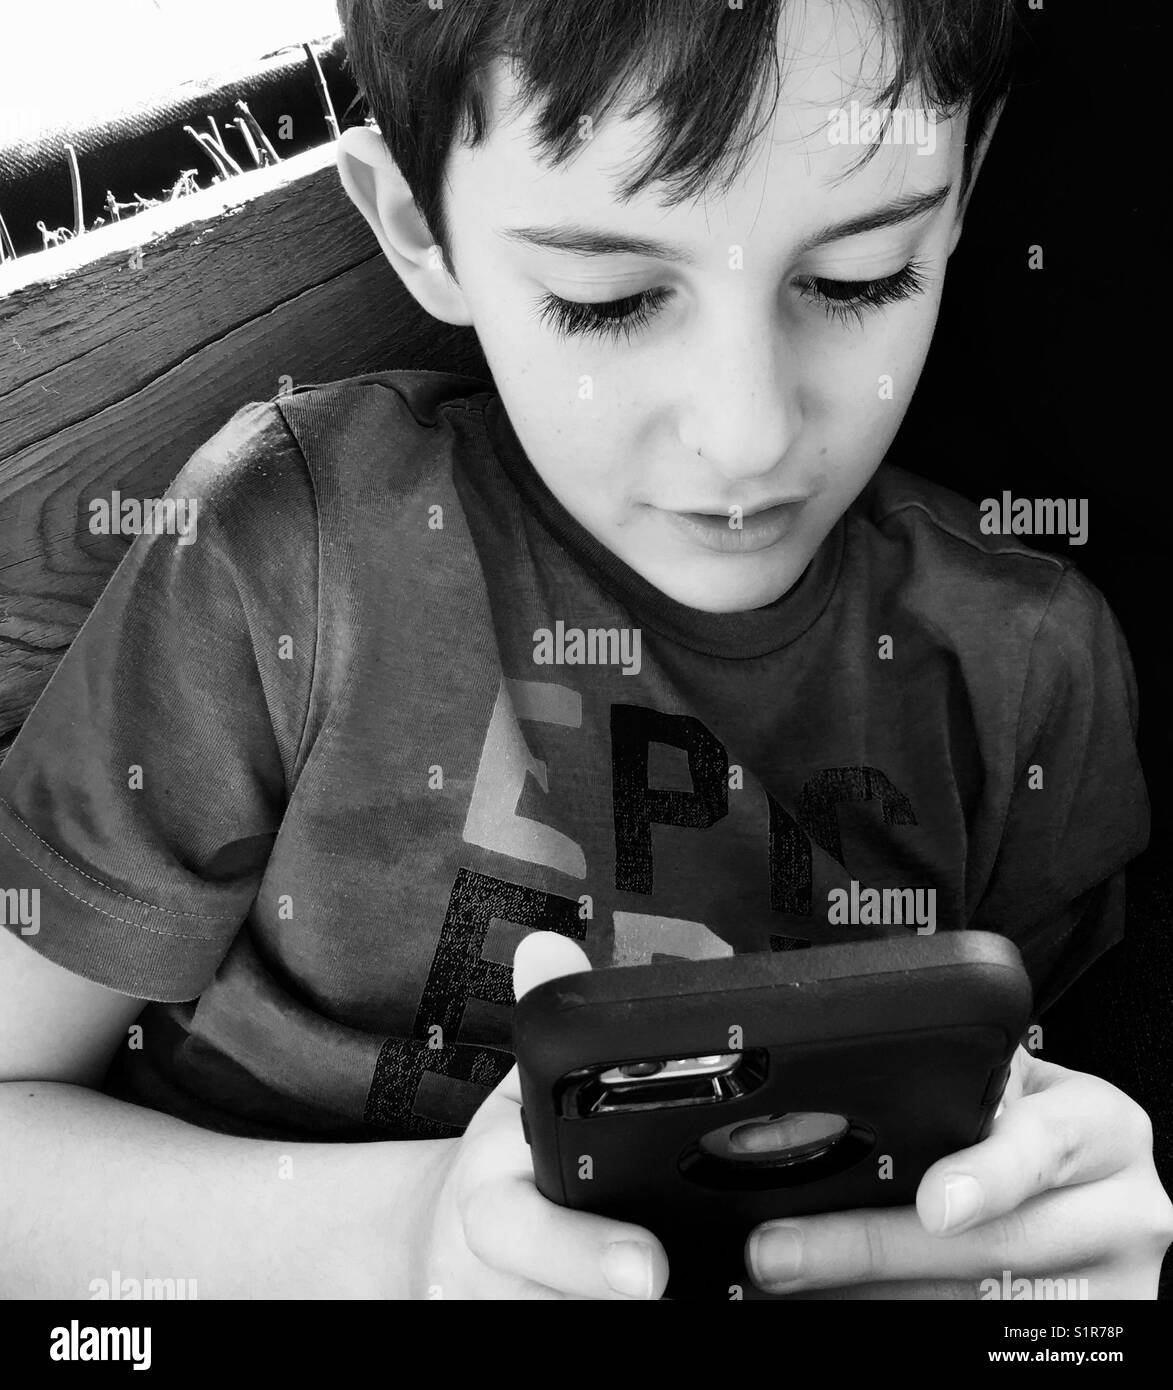 Junge mit einem Smartphone Stockfoto